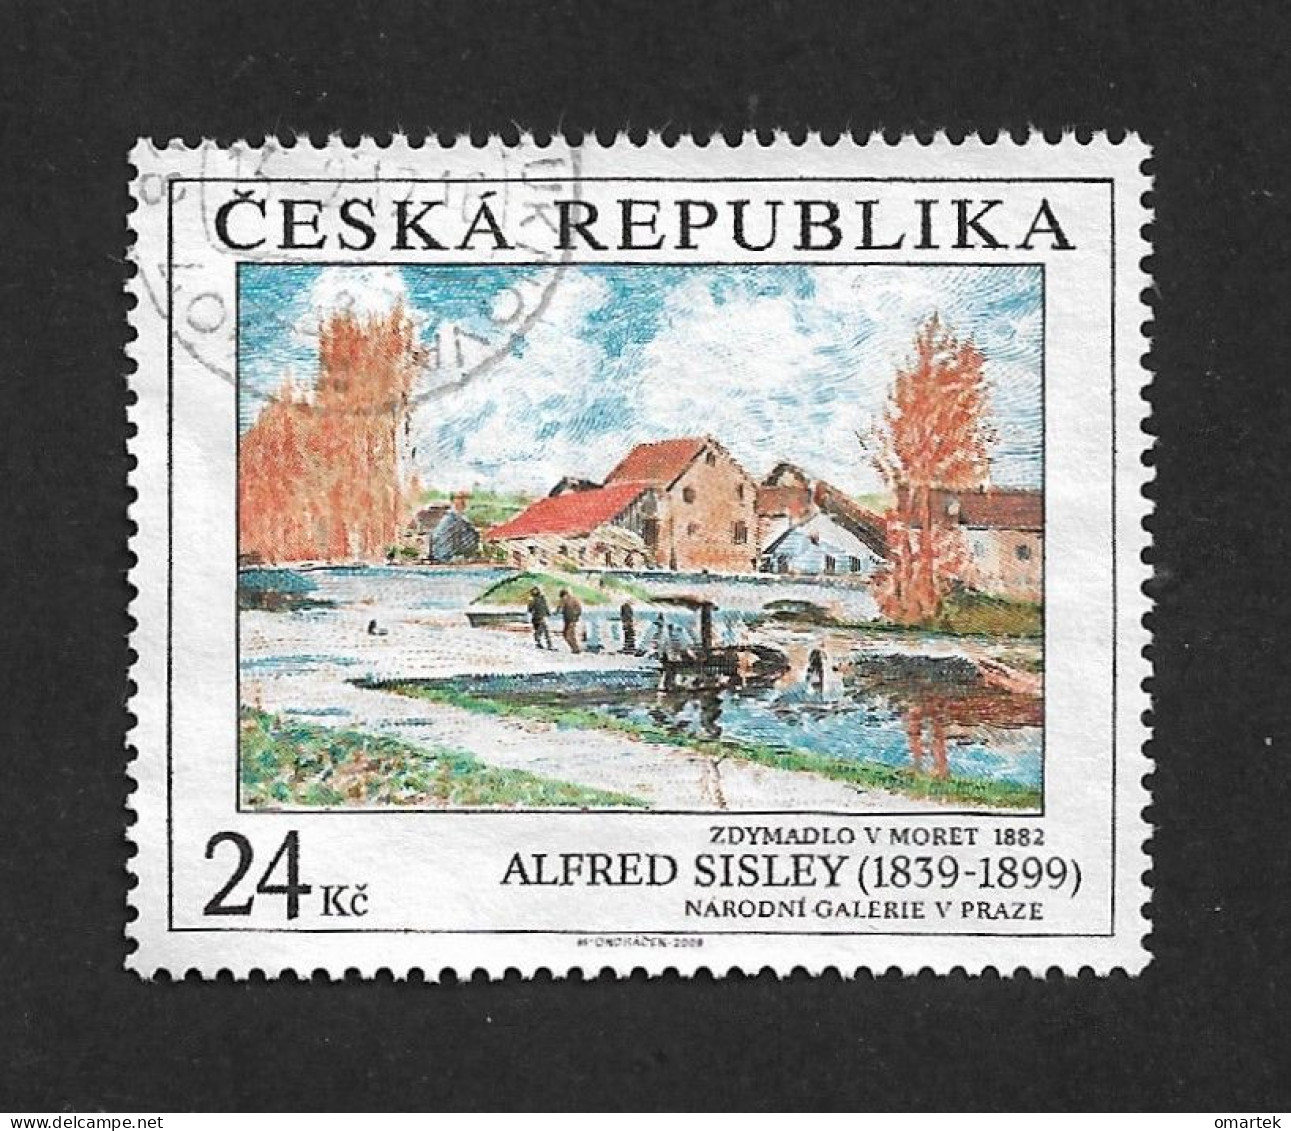 Czech Republic 2009 ⊙ Mi 614 Sc 3435 Alfred Sisley. Art Painting. Tschechische Republik. C3 - Gebraucht